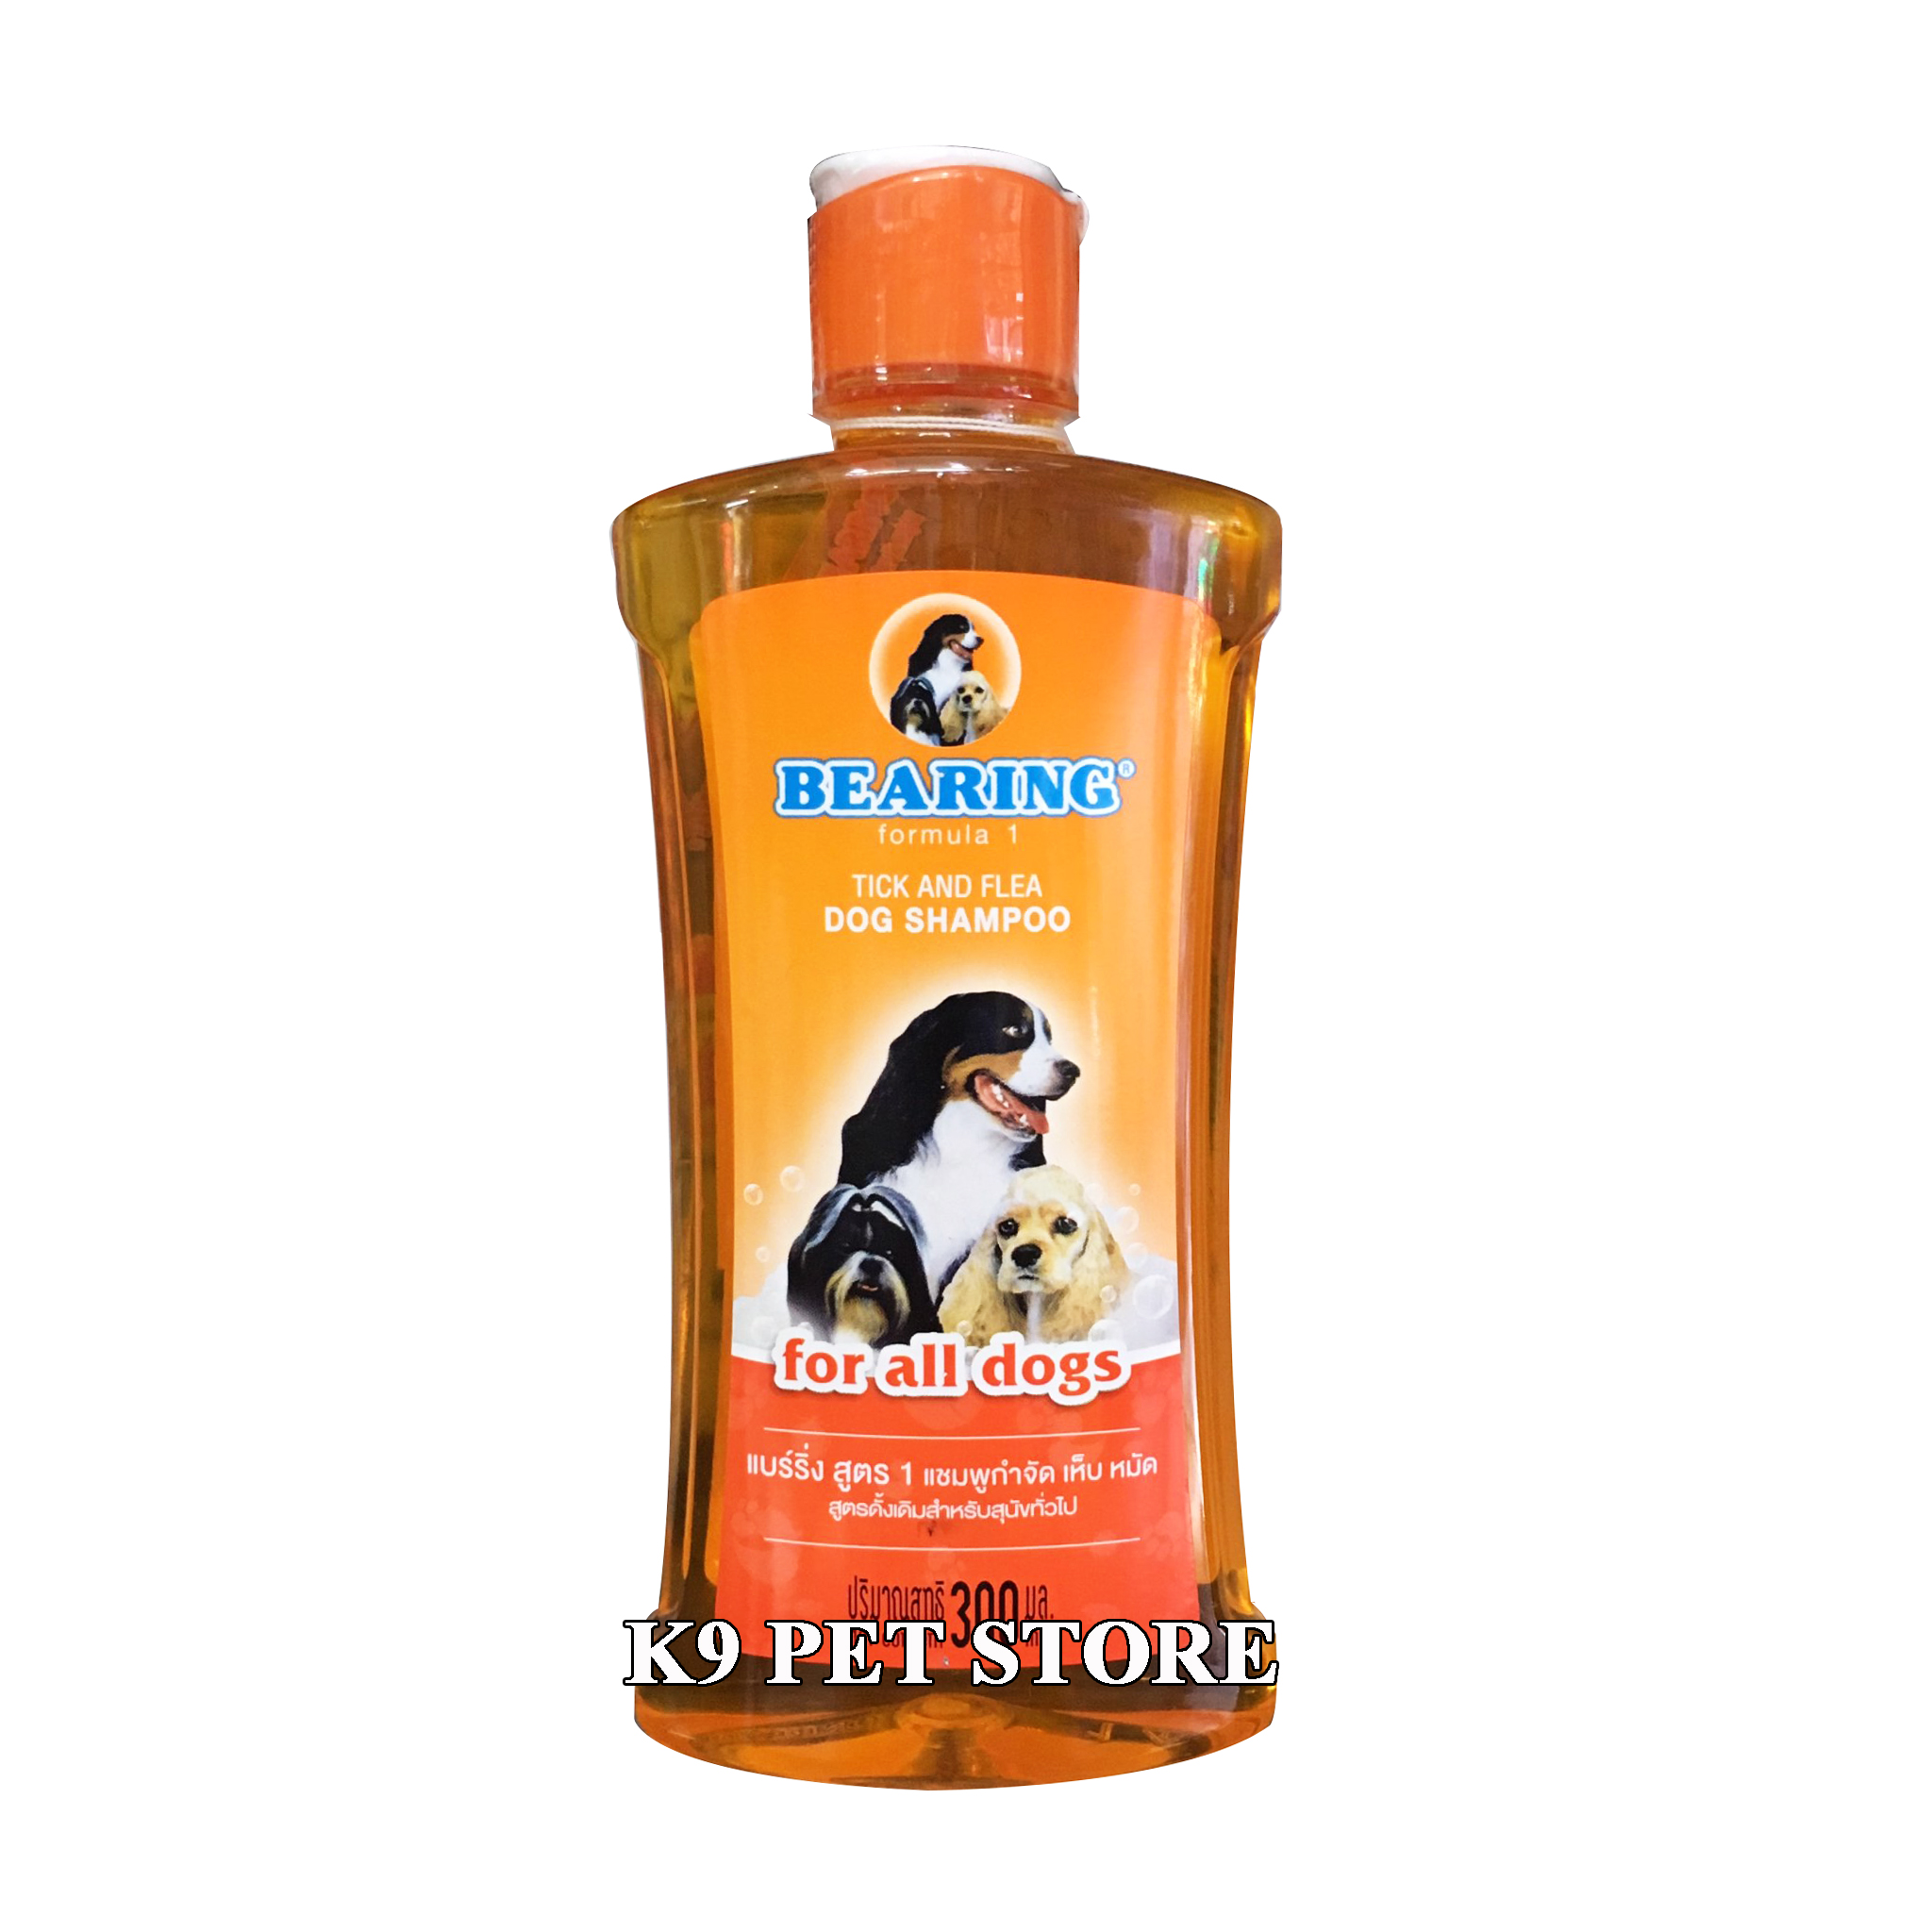 Sữa tắm trị ve Bearing Tick & Flea Dog Shampoo cho tất cả các loại chó 300ml